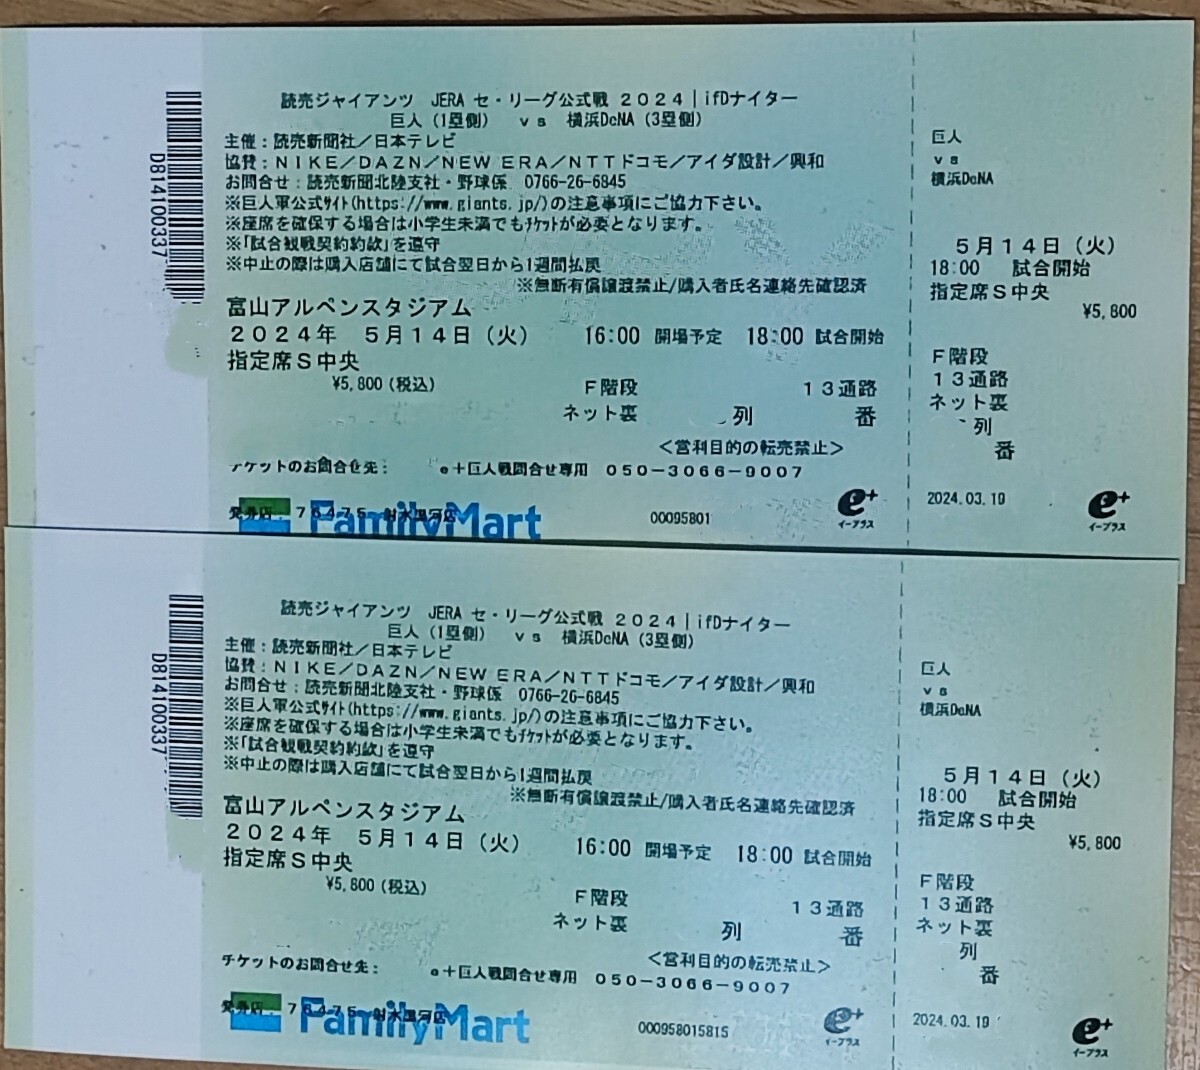 富山アルペンスタジアム 巨人vsDeNA 5/14 ネット裏指定席S中央 ペアチケットの画像1